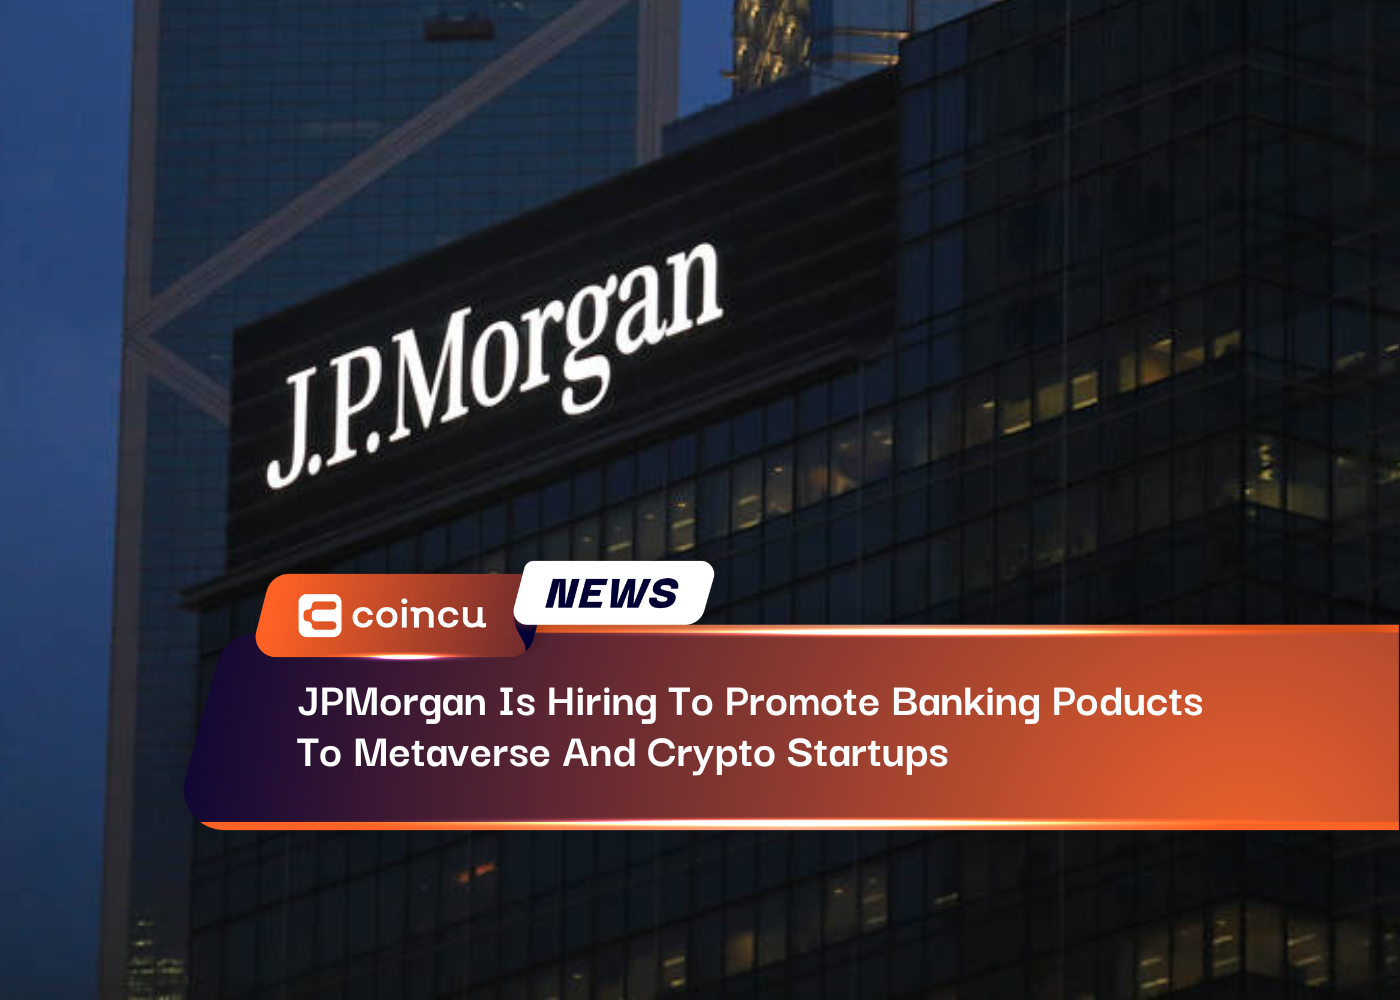 JPMorgan stellt Mitarbeiter ein, um Bankprodukte zu bewerben